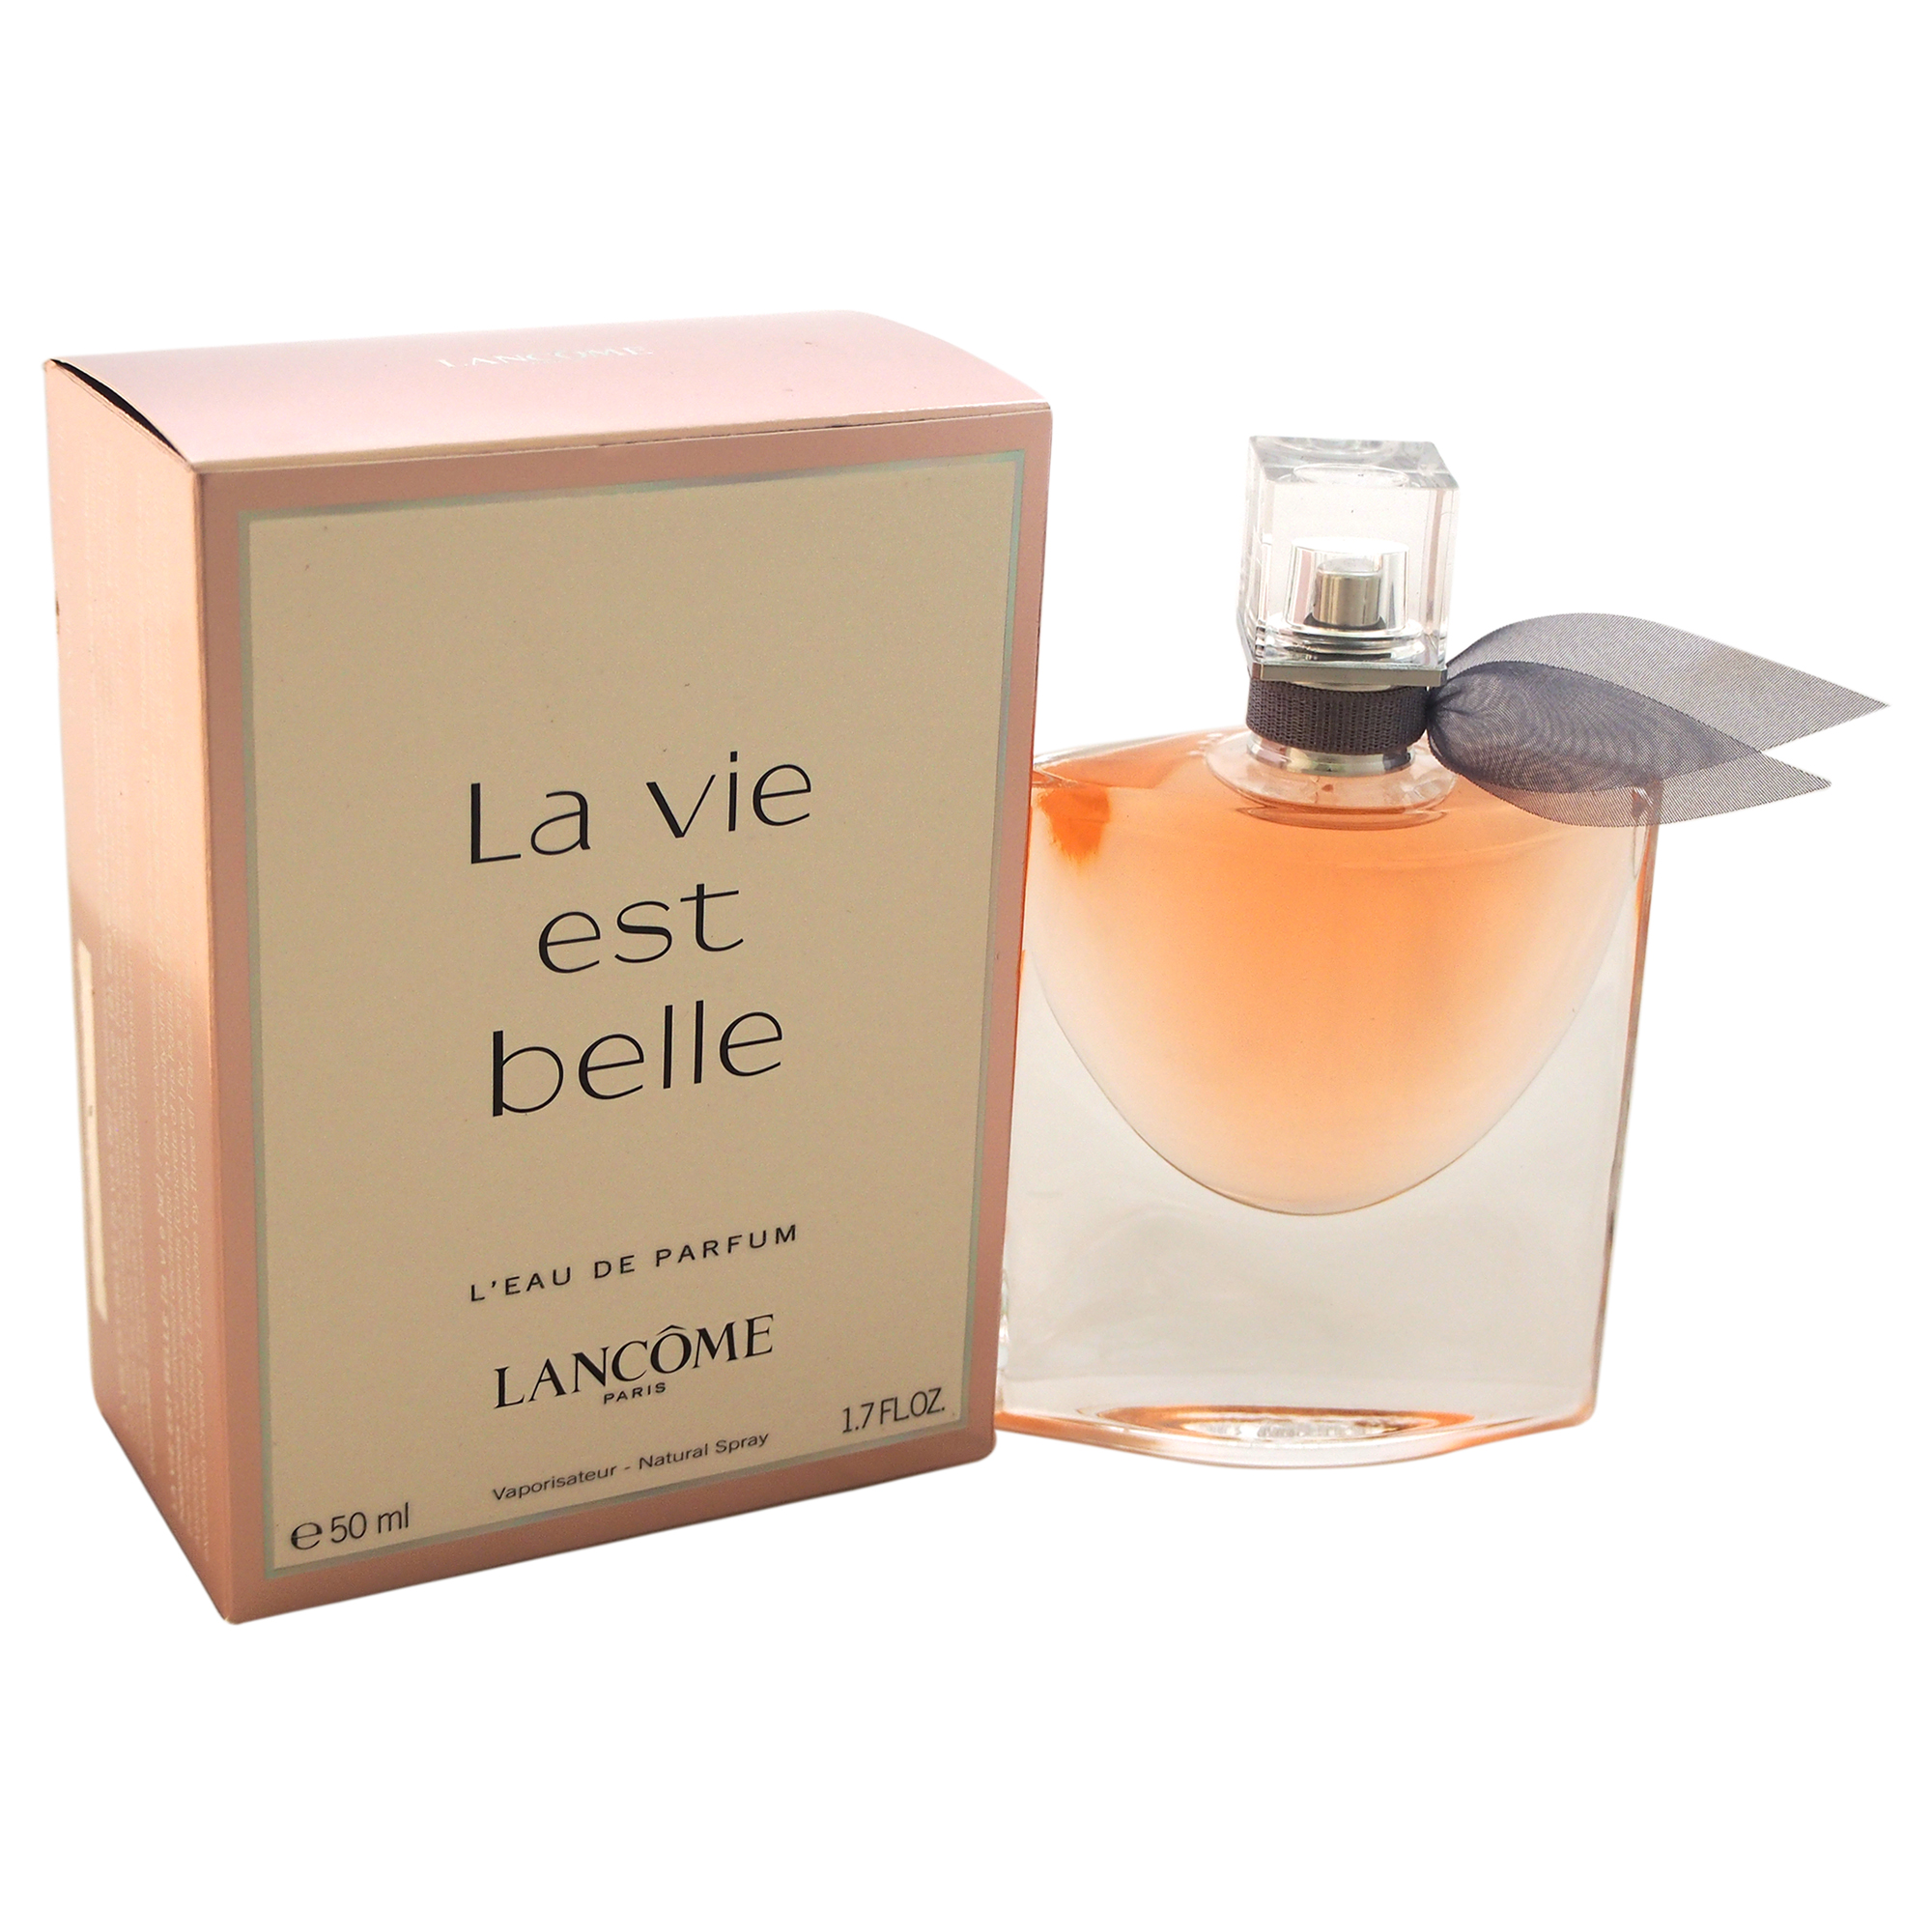 LA VIE EST BELLE by Lancome for Women - 1.7 oz L'Eau de Parfum Spray